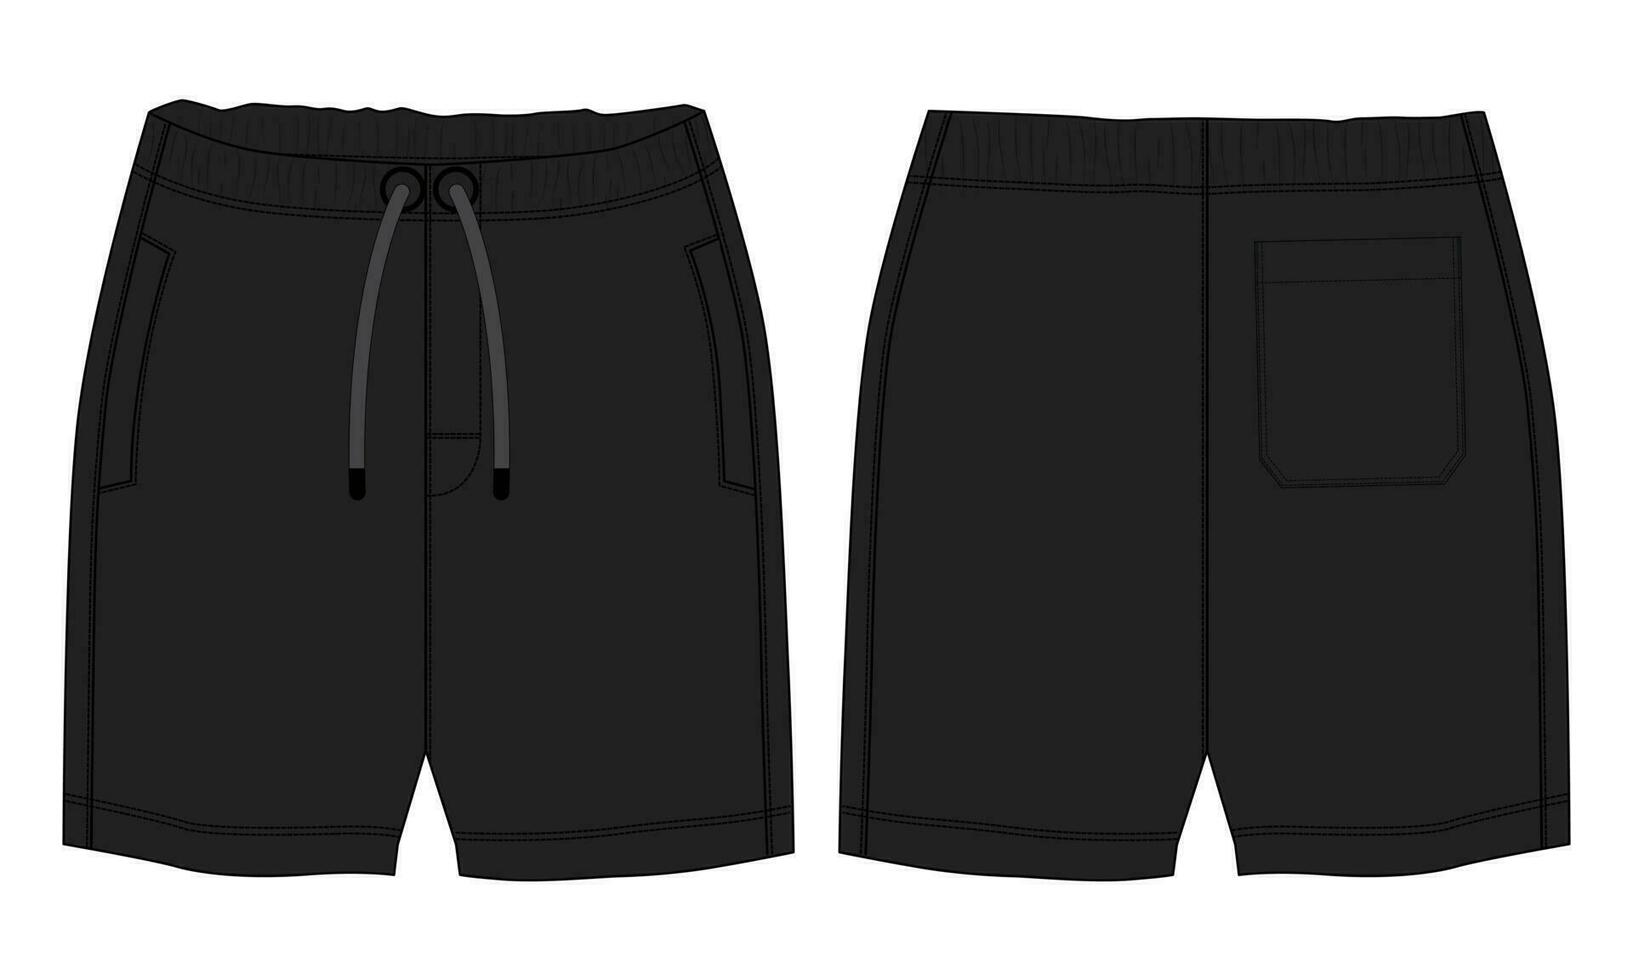 svart Färg svettas shorts flämta vektor illustration mall främre och tillbaka visningar isolerat på vit bakgrund